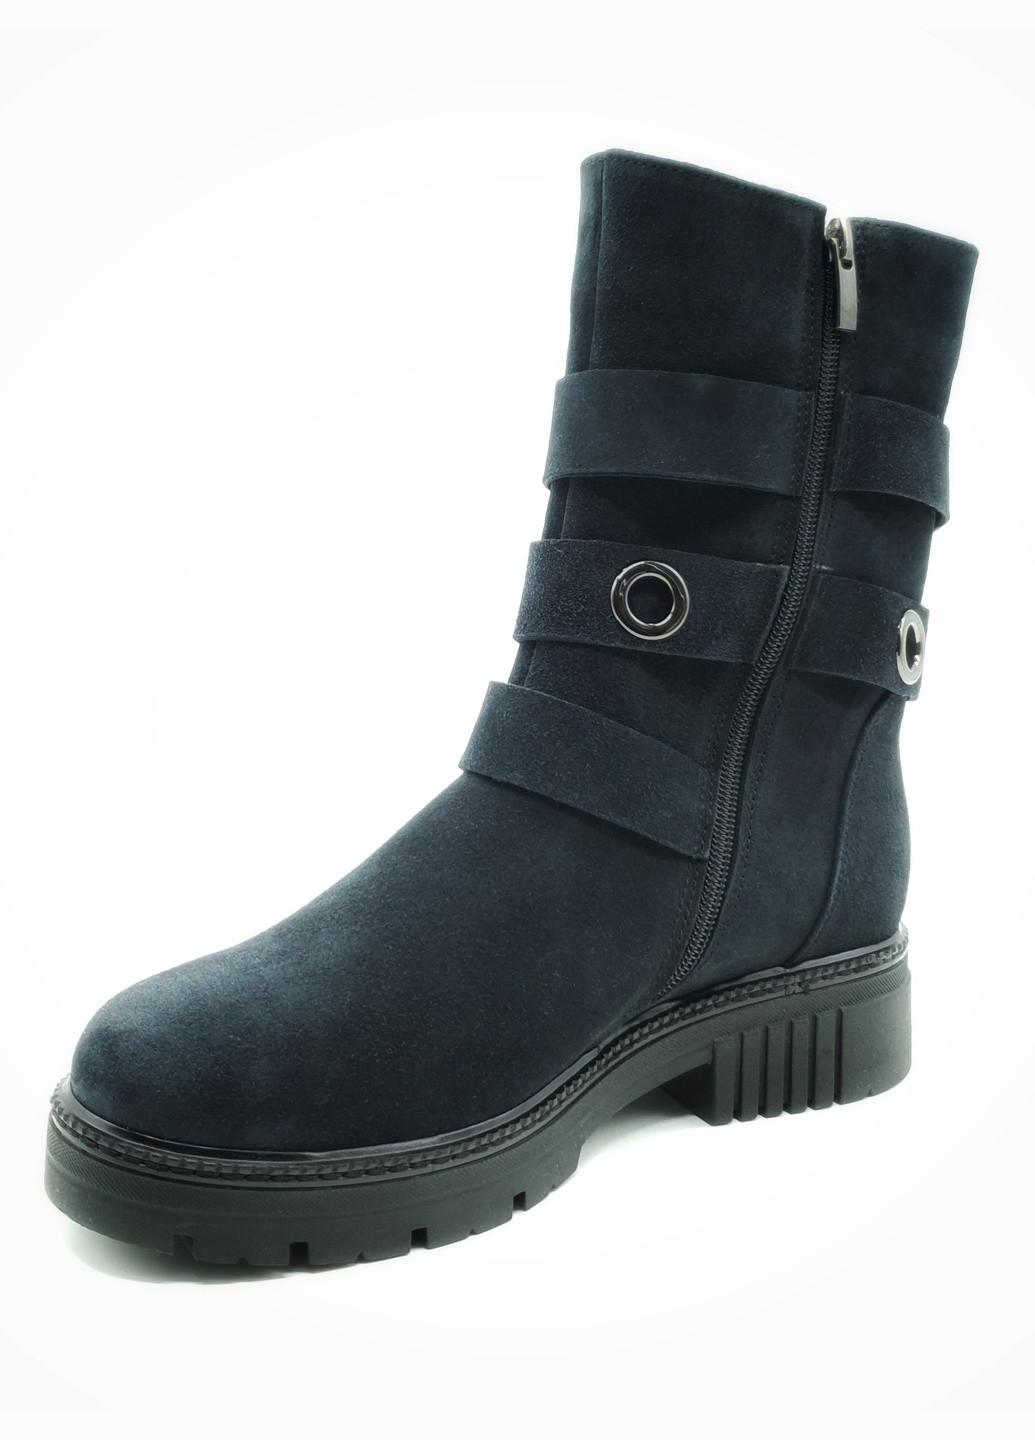 Осенние женские ботинки зимние синие замшевые fs-18-4 23,5 см (р) Foot Step